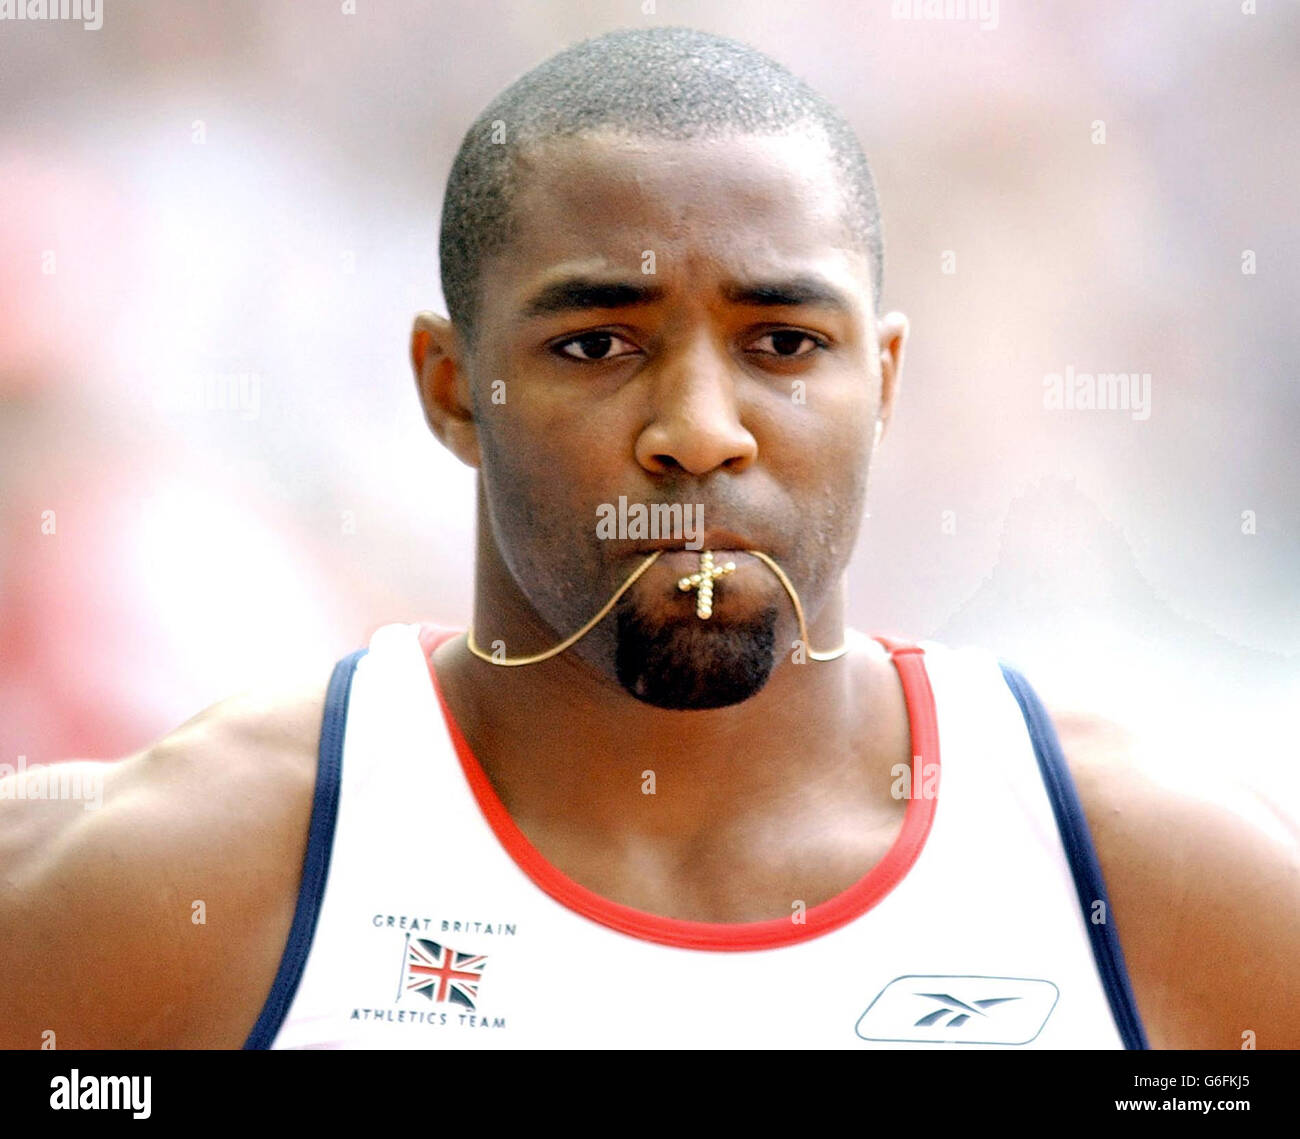 Lo sprinter britannico Darren Campbell si prepara per un altro round dei 200m degli uomini dopo una comoda qualifica nel primo round ai Campionati del mondo di atletica a Parigi, mercoledì 27 agosto 2003. Foto Stock